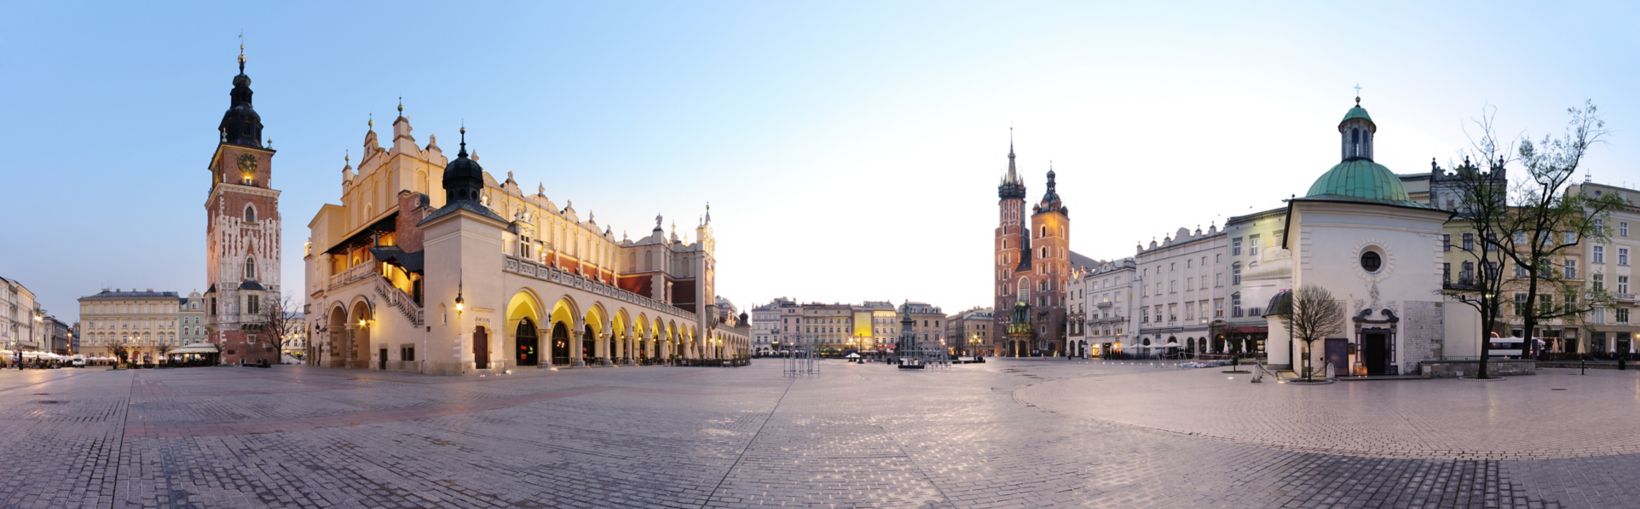 Plaza de la ciudad de Cracovia, Polonia, al amanecer